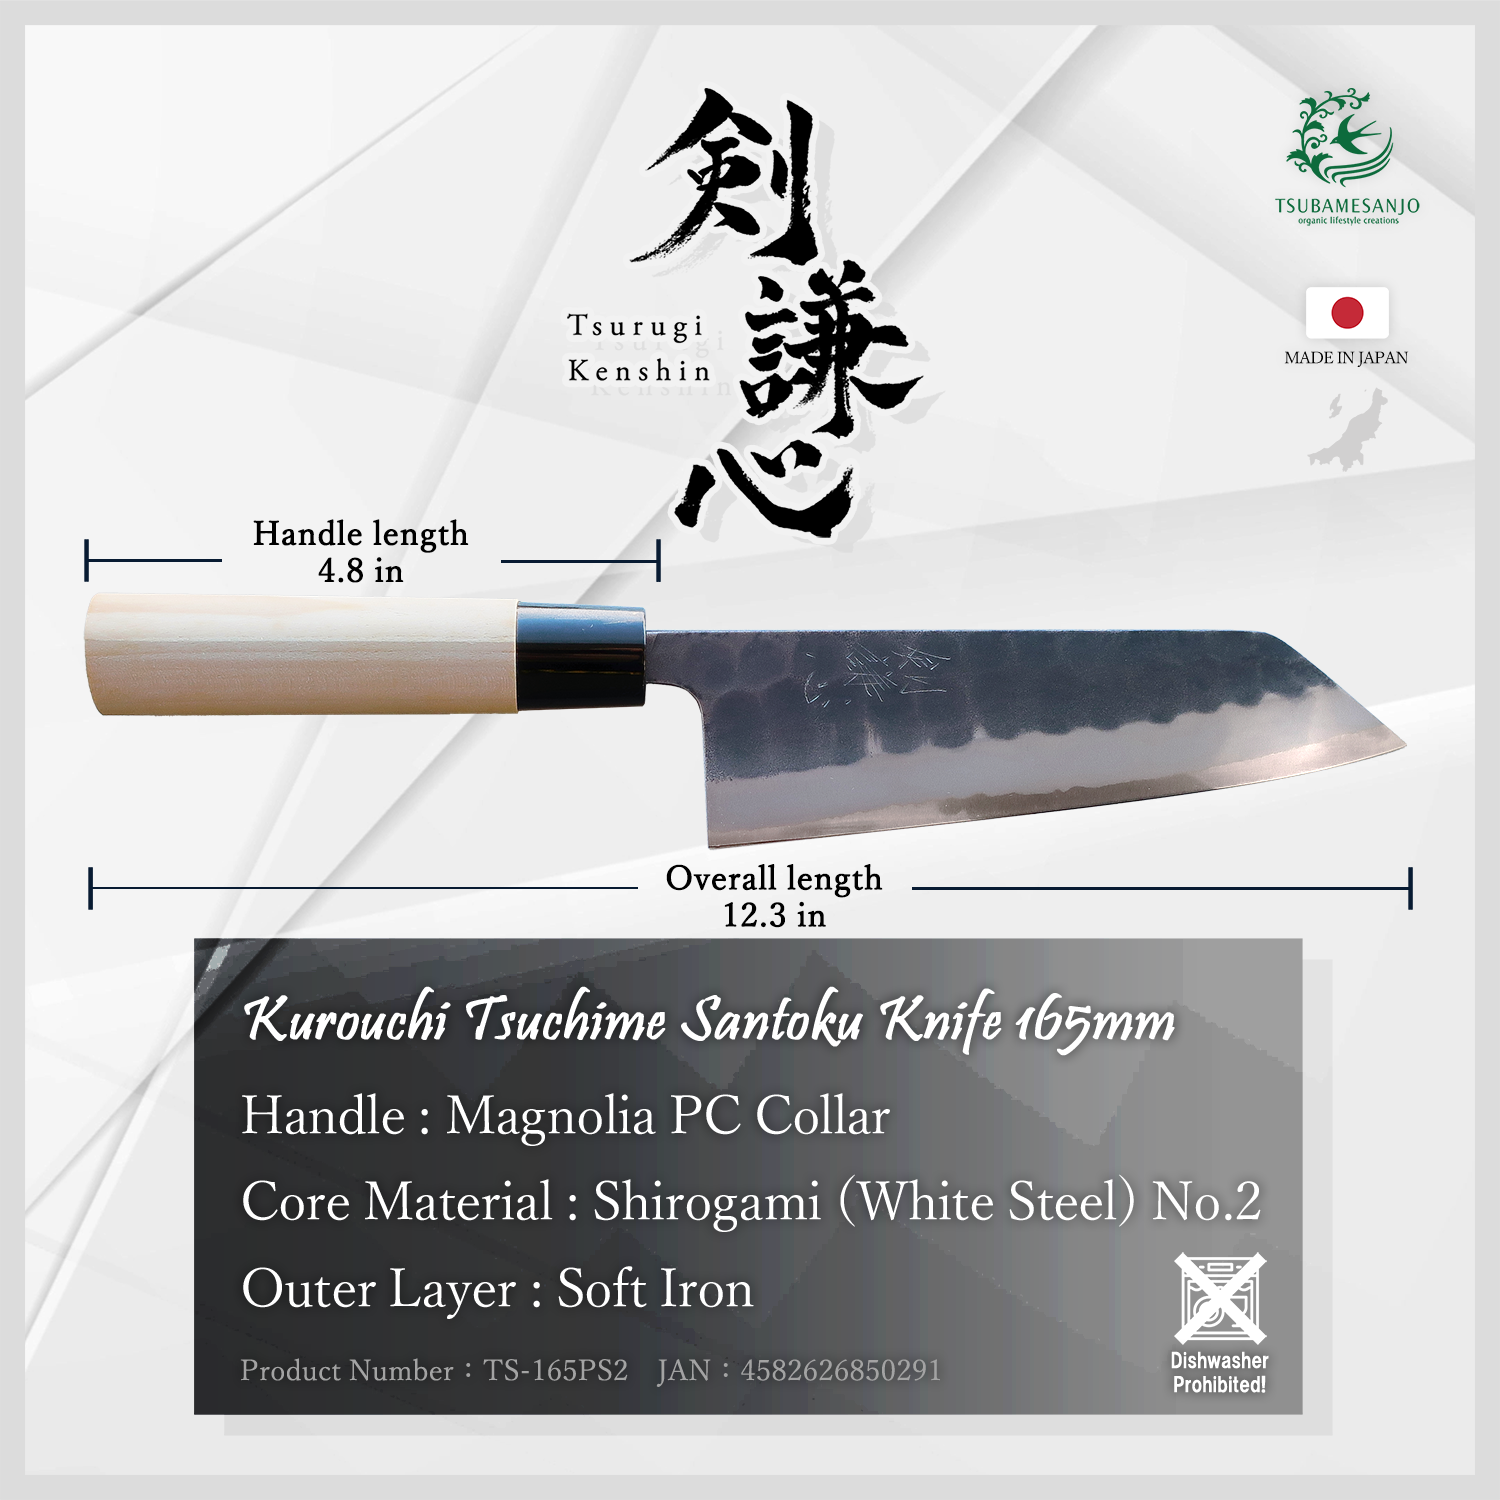 Kurouchi Tsuchime Santoku Knife 165mm (TS-165PS2)